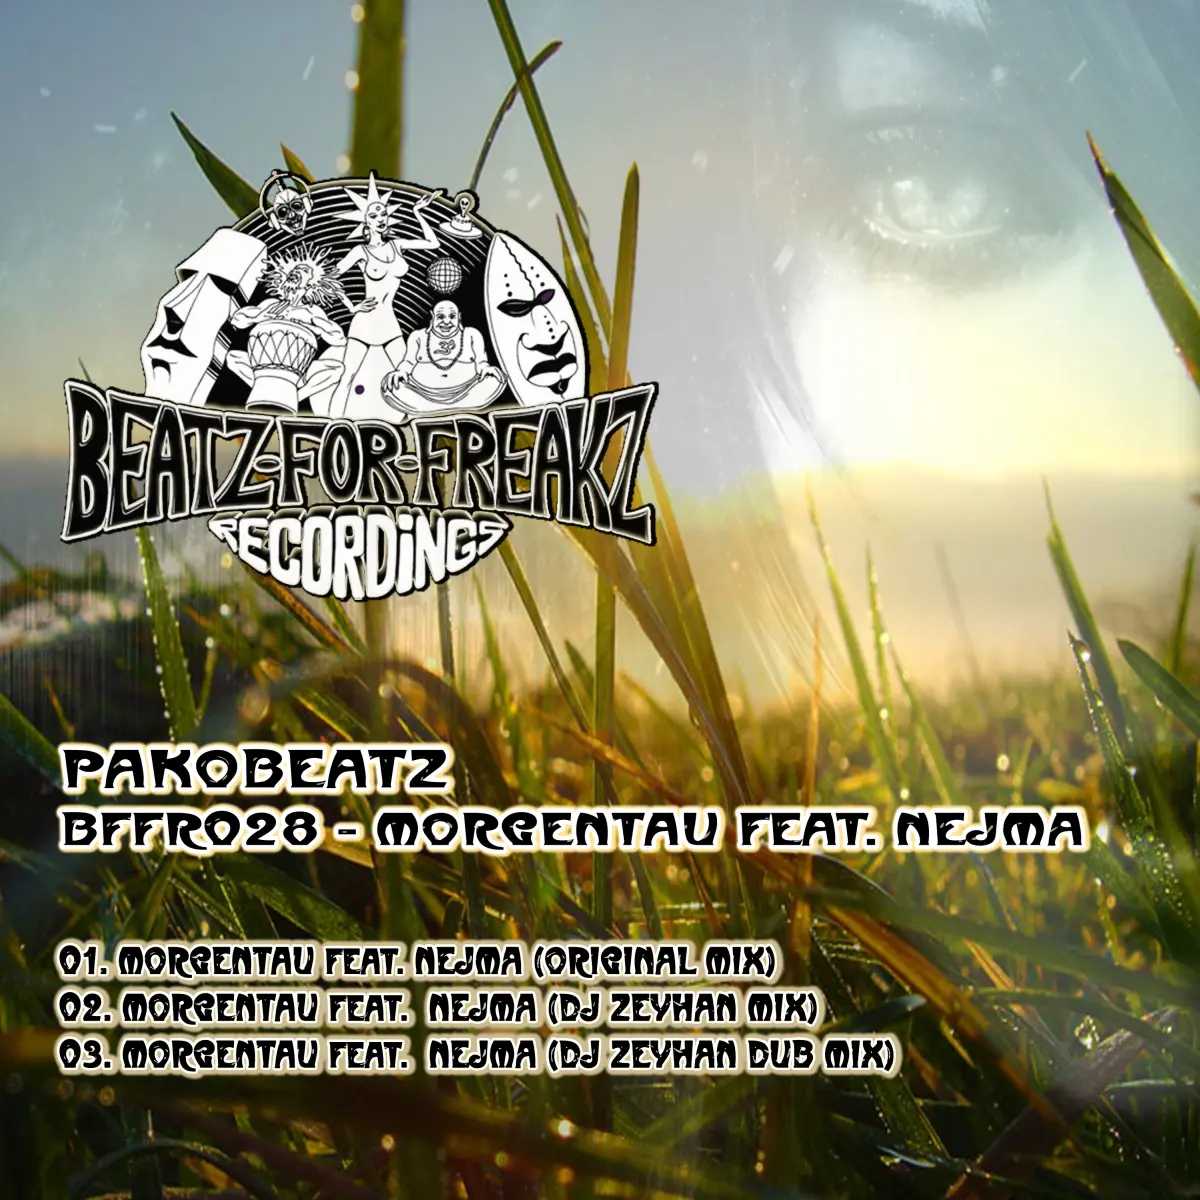 BFFR028 - Pakobeatz - Morgentau feat. Nejma